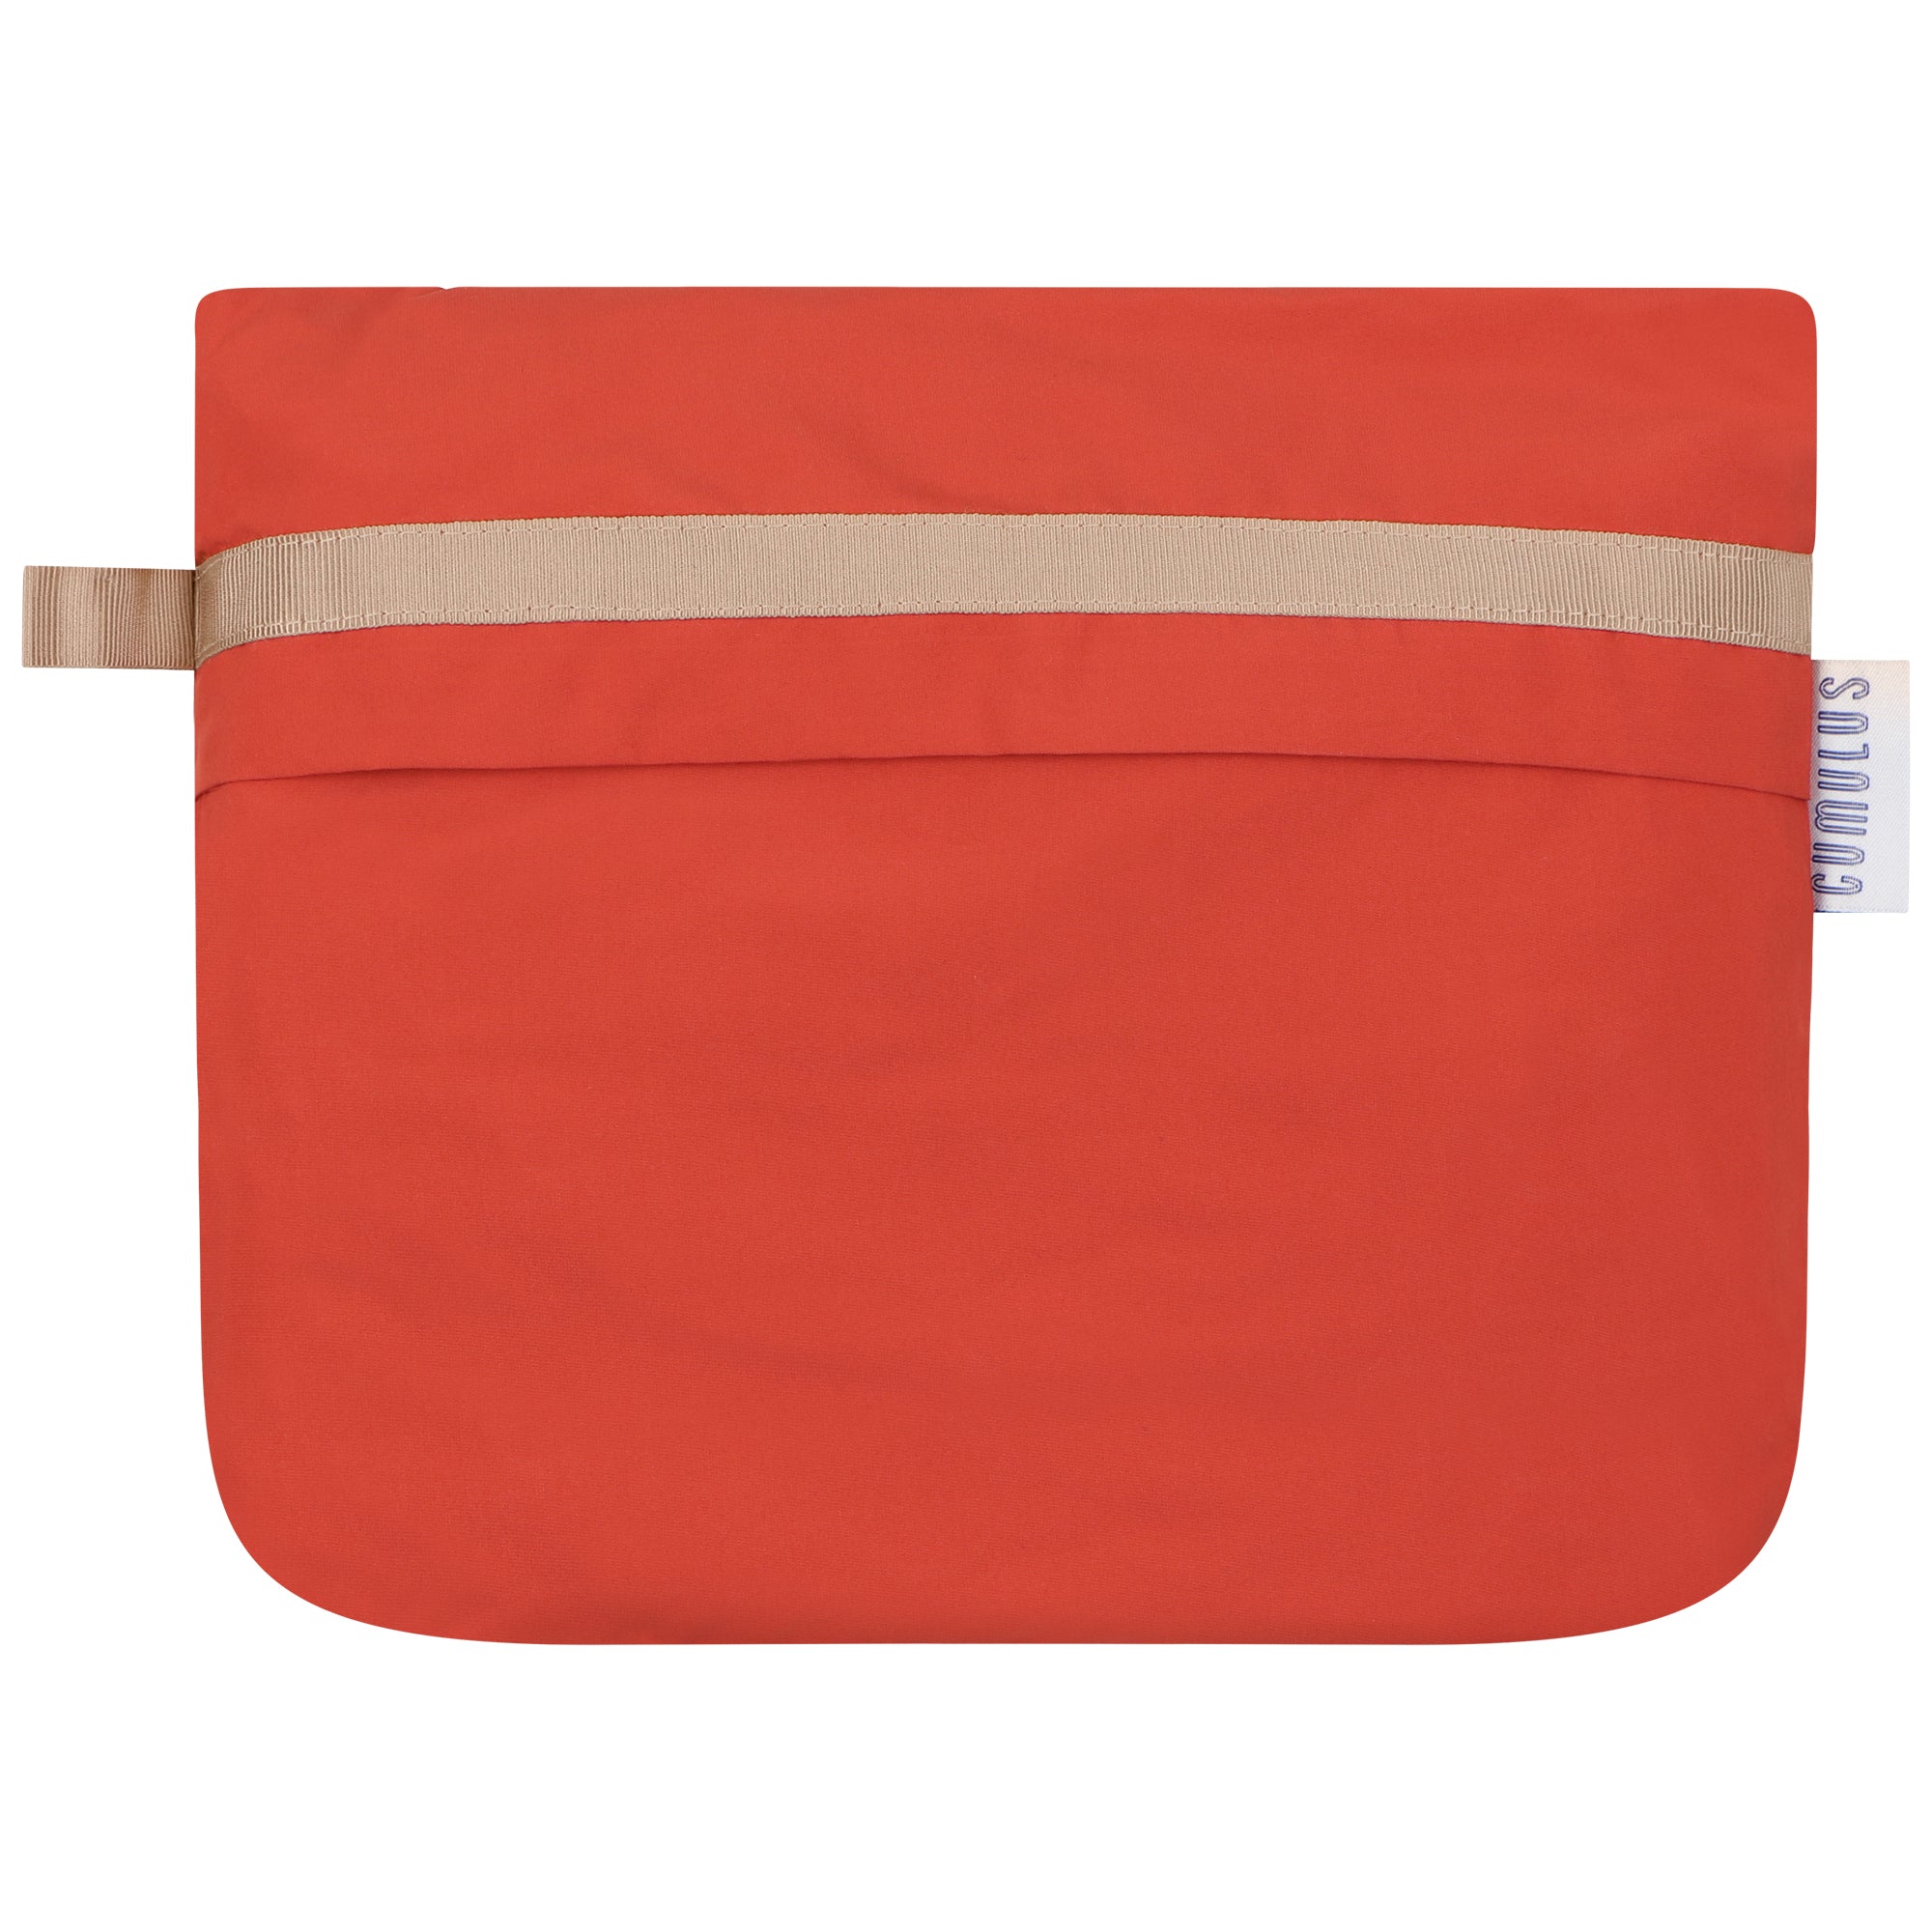 Bise raincoat - Orange color - pouch bag